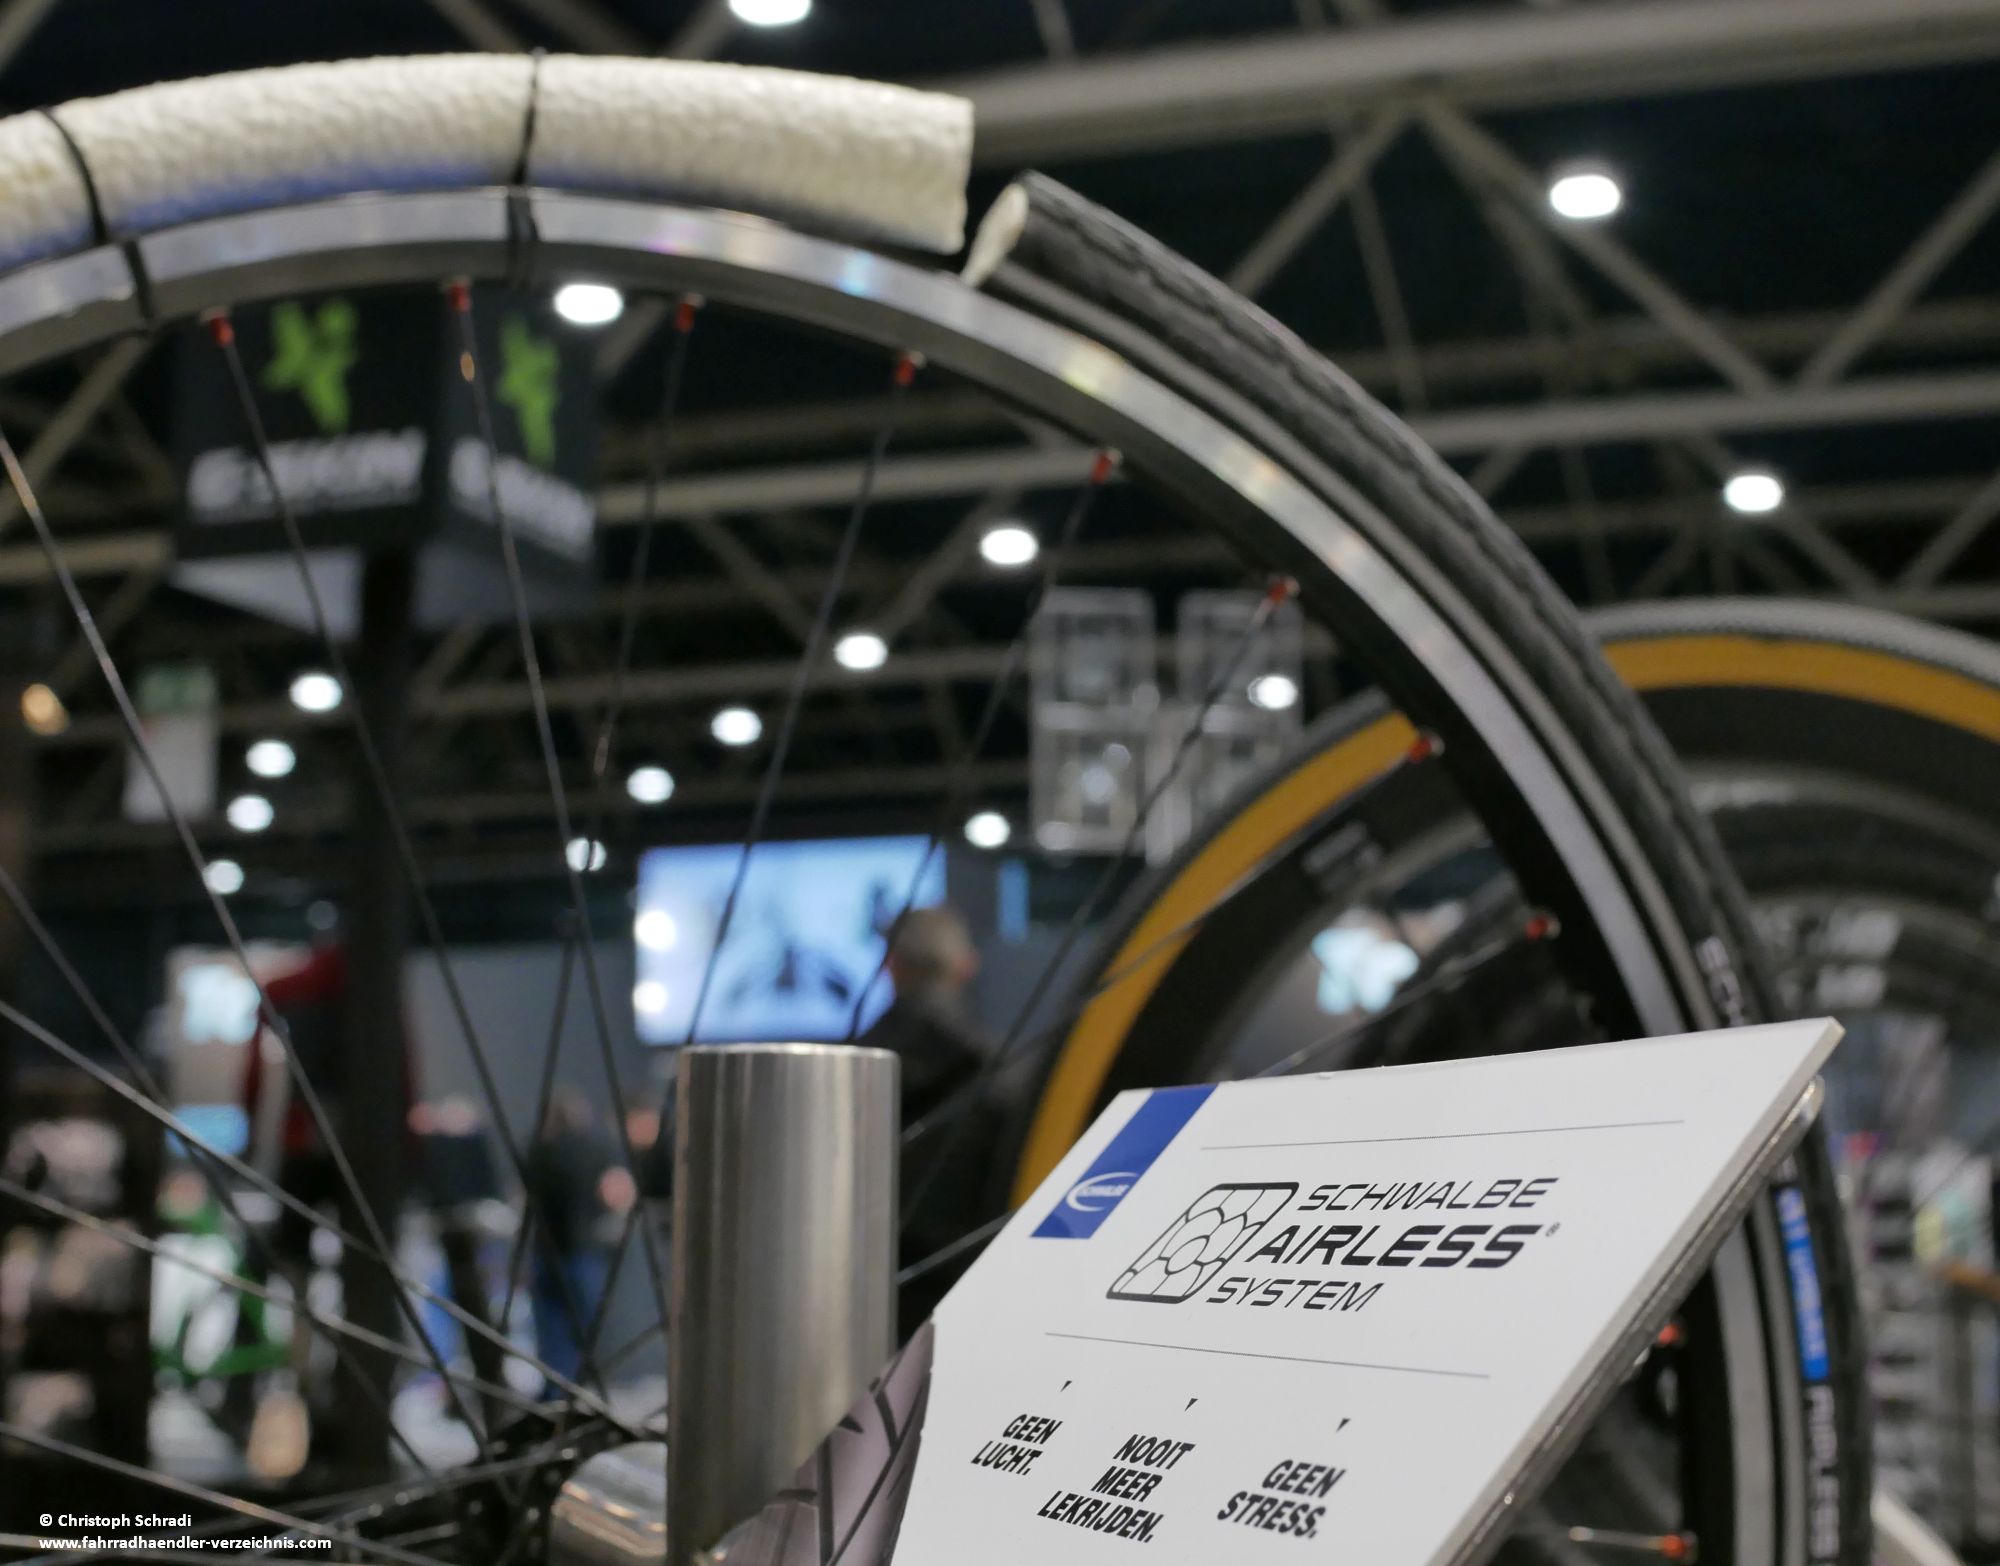 Das Schwalbe Airless System in der Übersicht: Fahrradreifen (außen), innenligender Fahrradschlauch ohne Luft, Einlage für Felgenbett